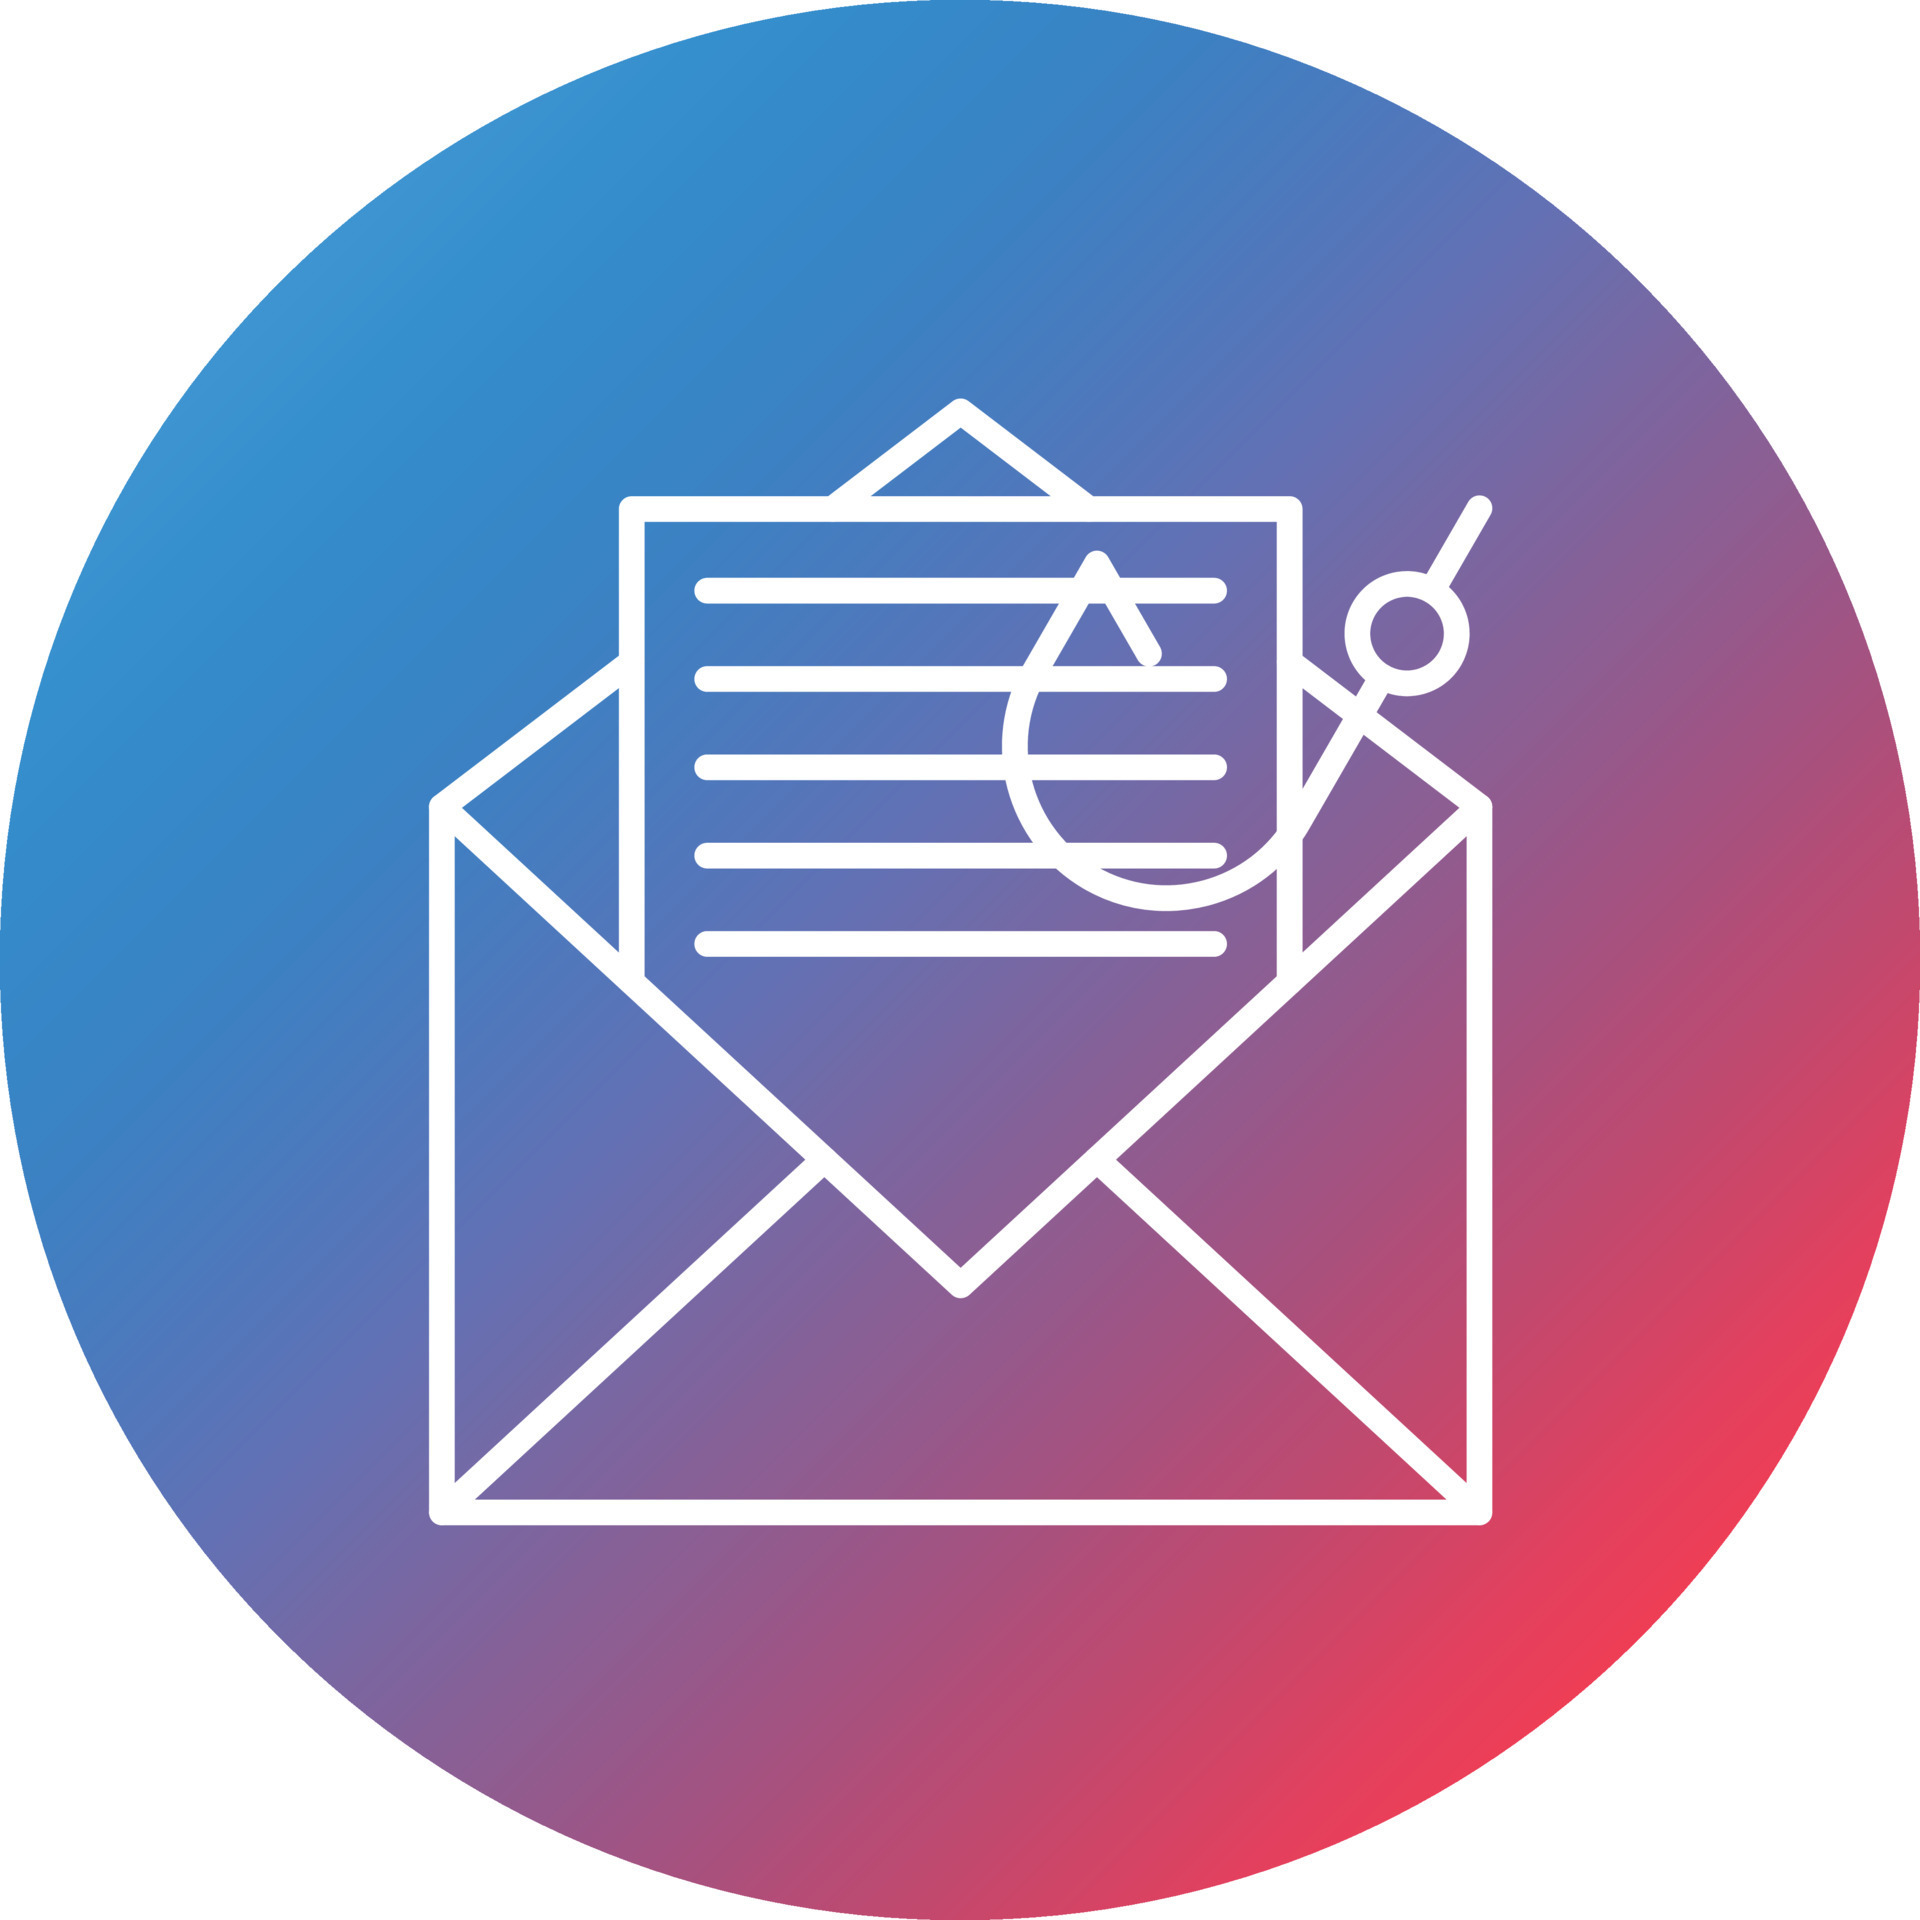 Email là một công cụ hữu ích, tuy nhiên đôi khi nó cũng gây ra những trục trặc khó chịu. Nếu bạn quan tâm đến bảo mật thông tin, biểu tượng email đánh dấu một vấn đề đáng chú ý - lừa đảo qua email. Hình ảnh với đường dẫn gradient và màu sắc đậm đà sẽ giúp bạn hiểu rõ hơn và có biện pháp phòng ngừa kịp thời.